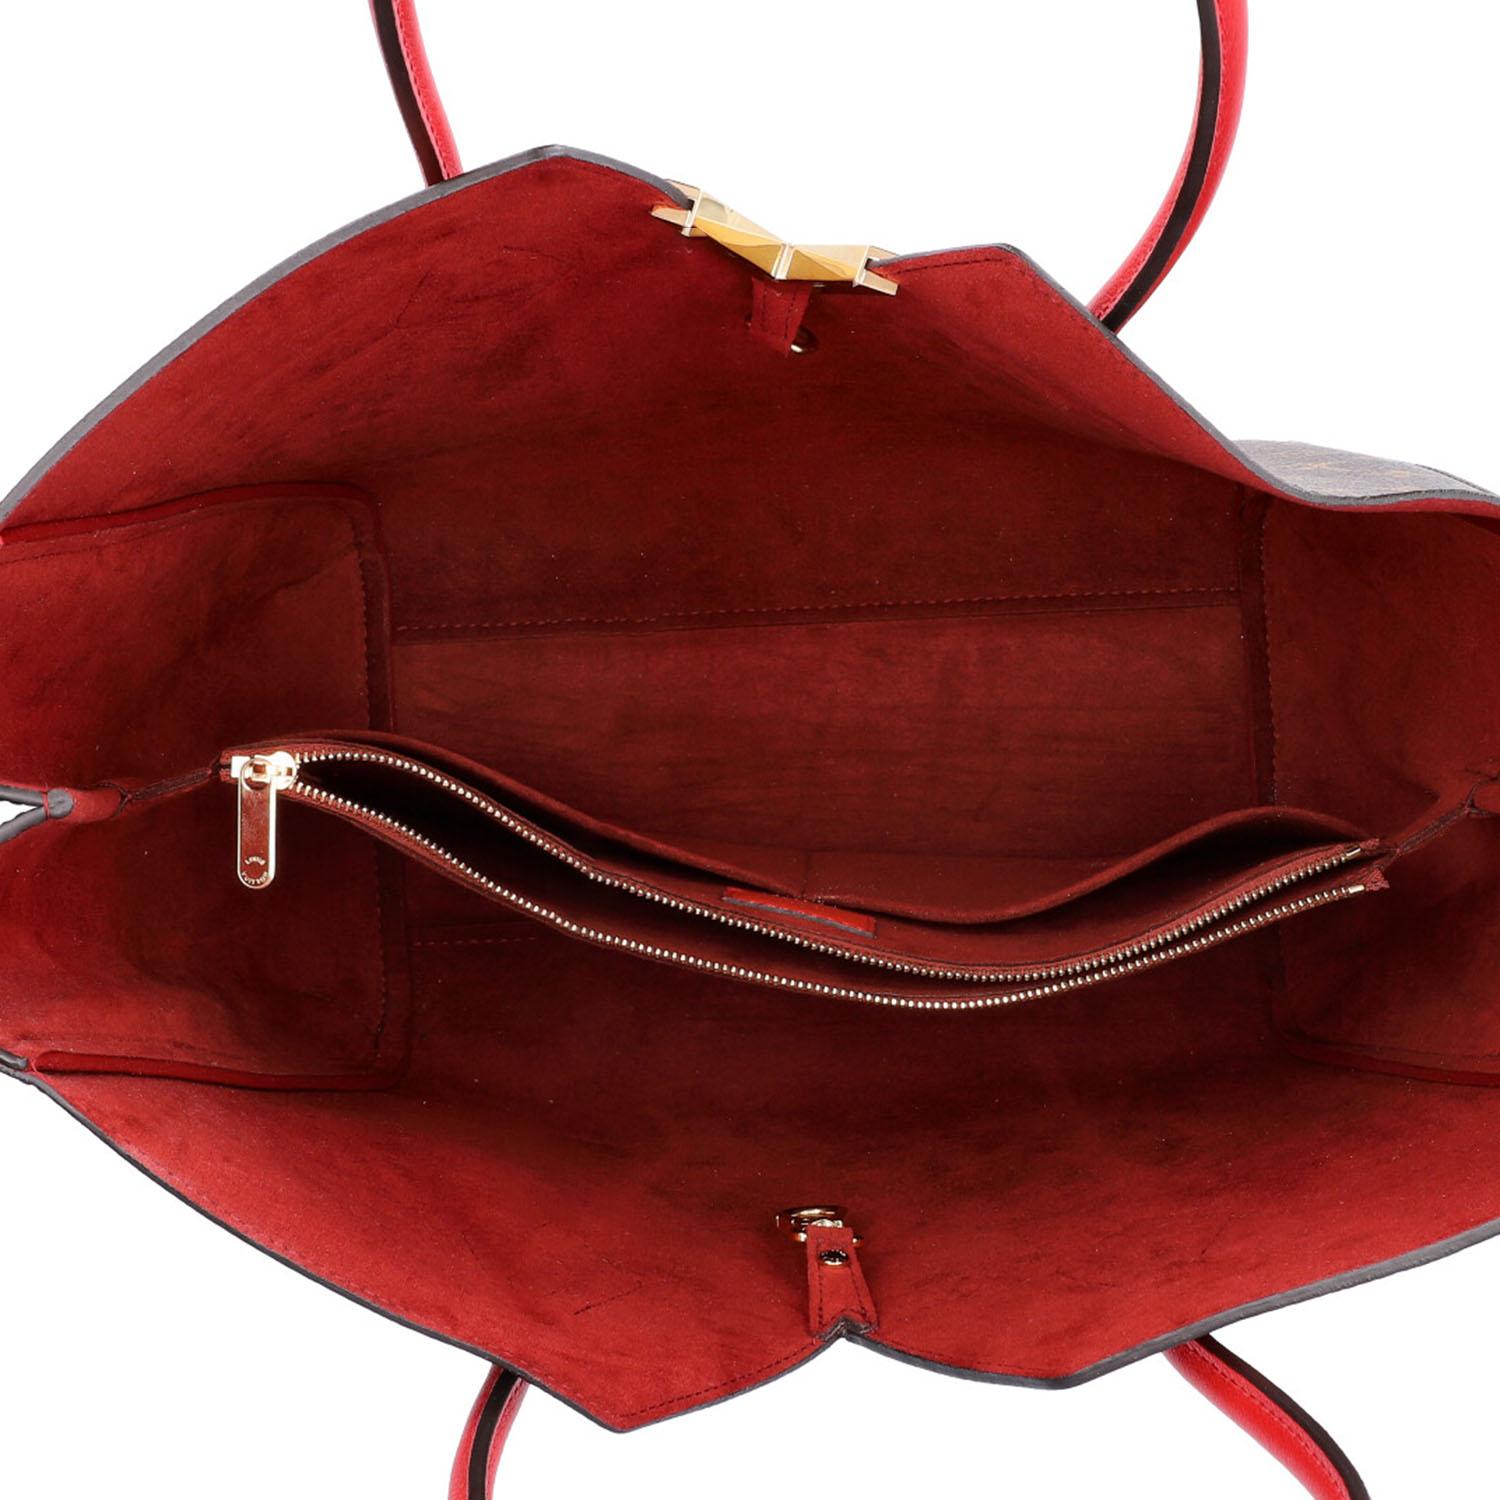 Louis Vuitton Kimono Handbag